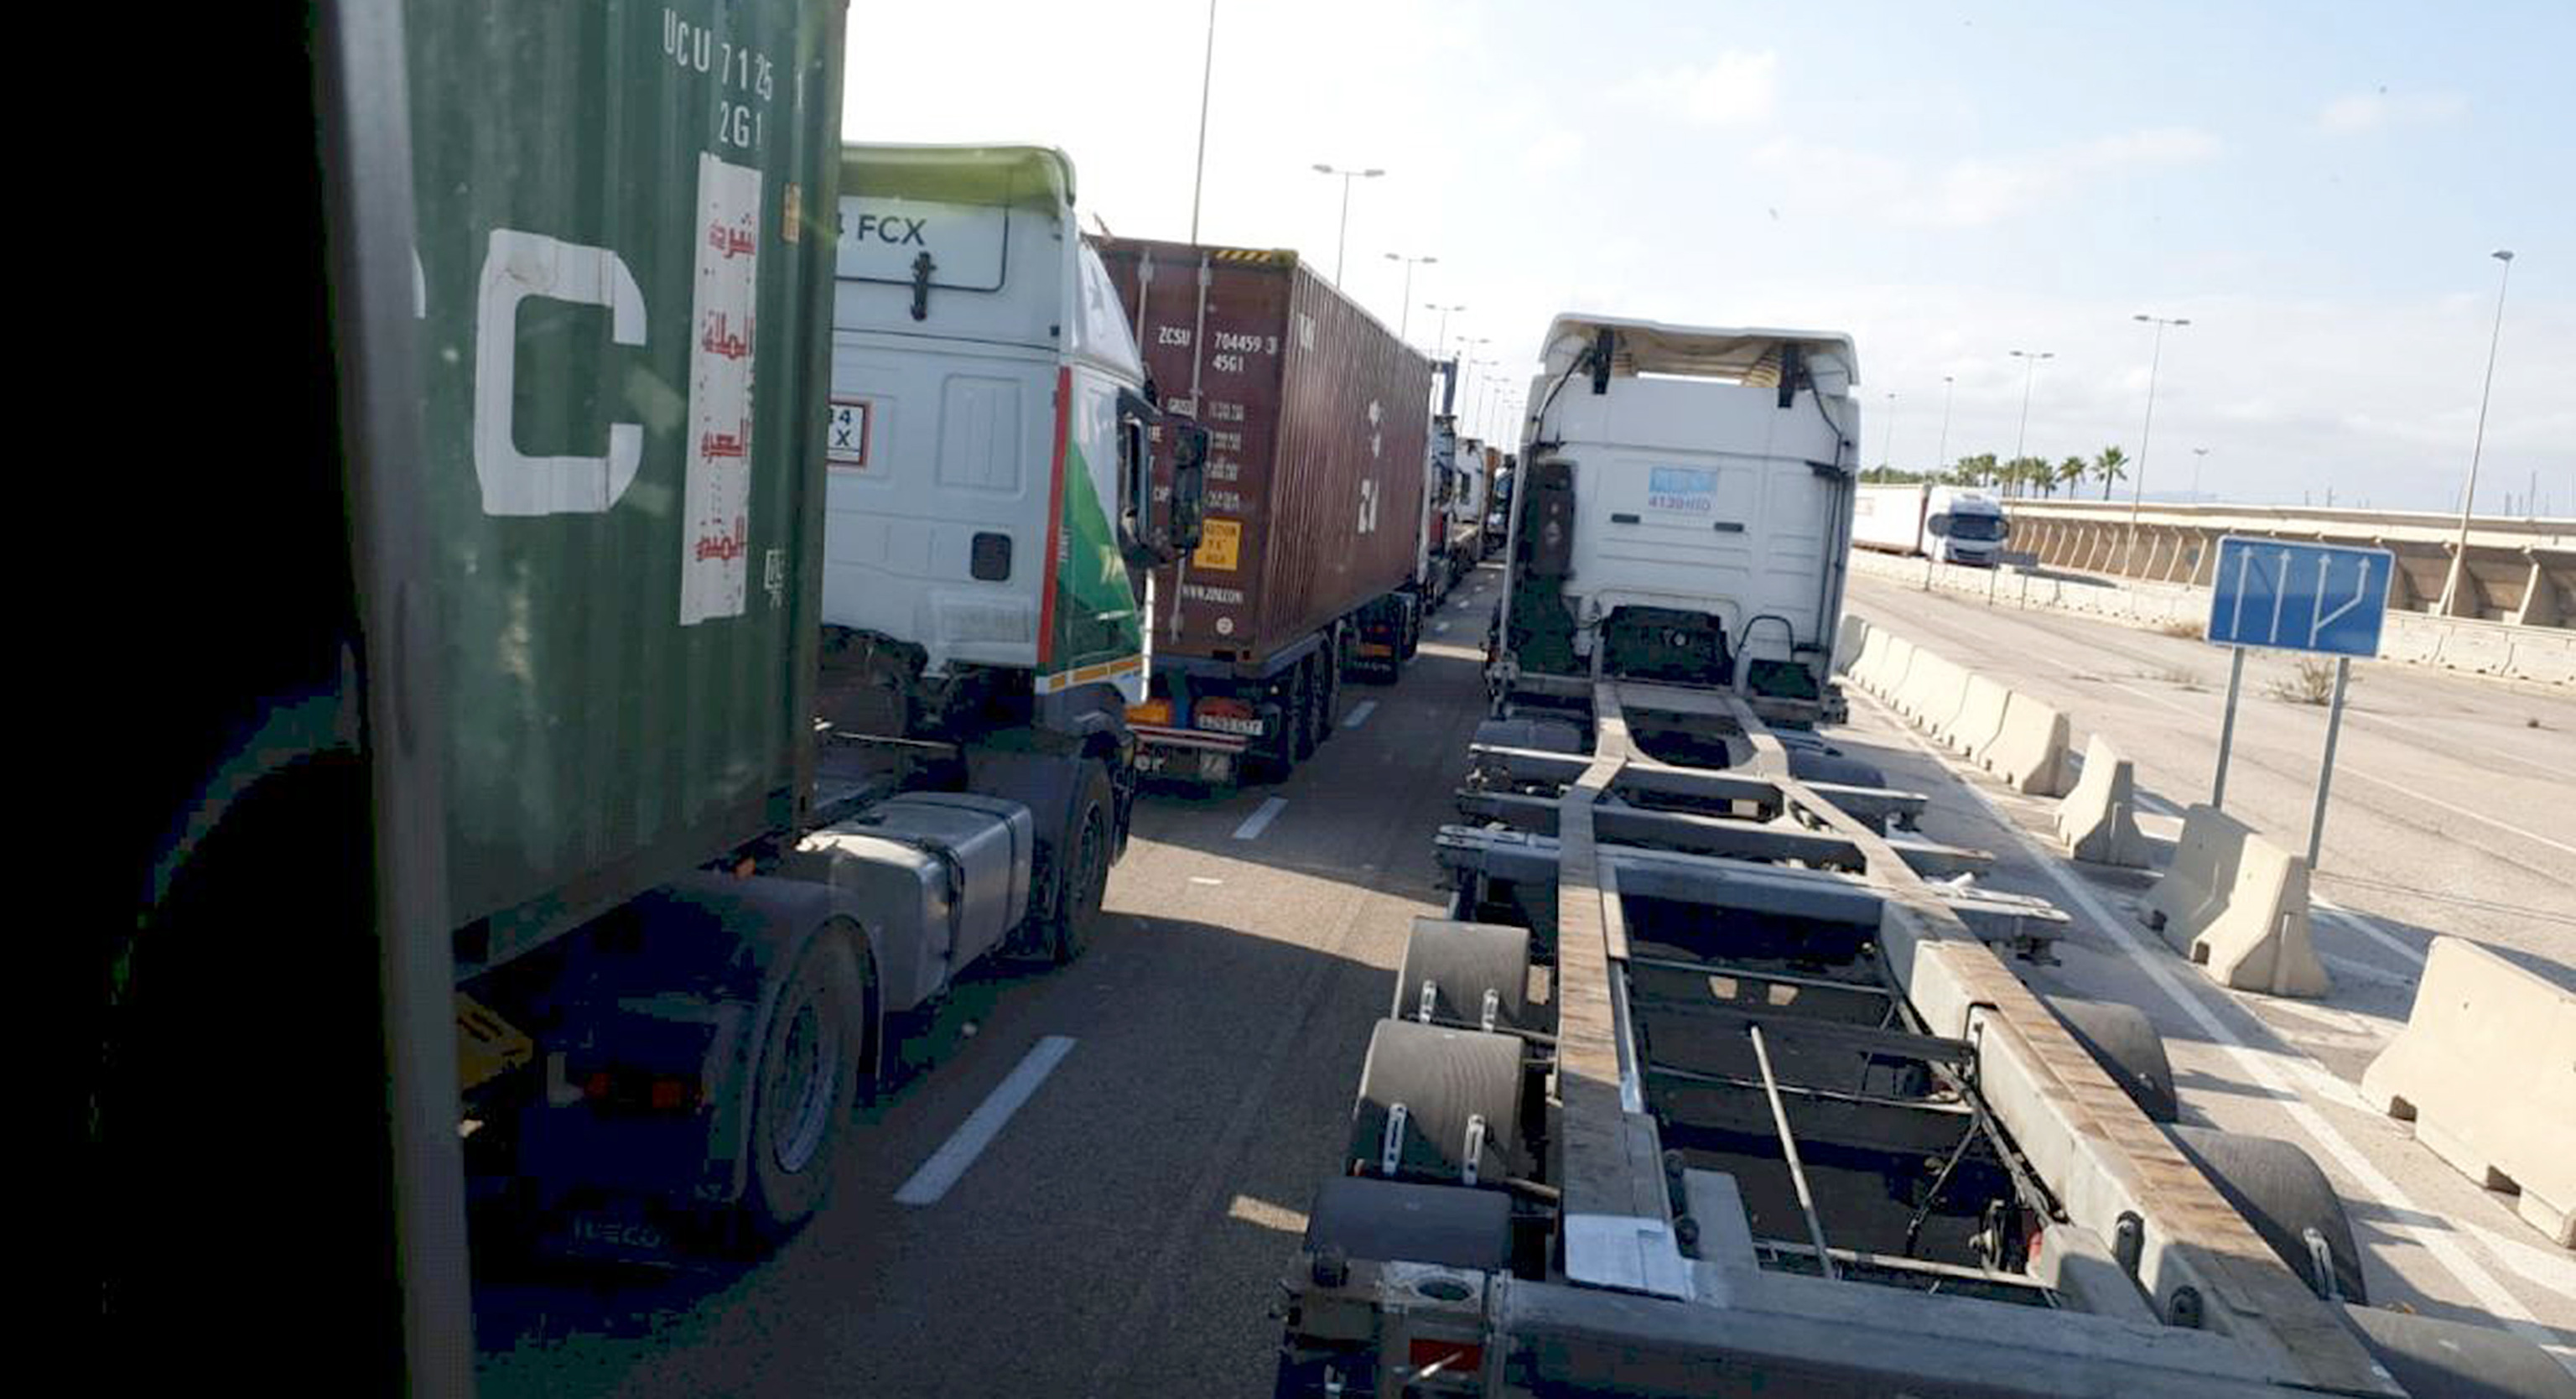 Imagen de colas de camiones en el acceso del puerto de Valencia.